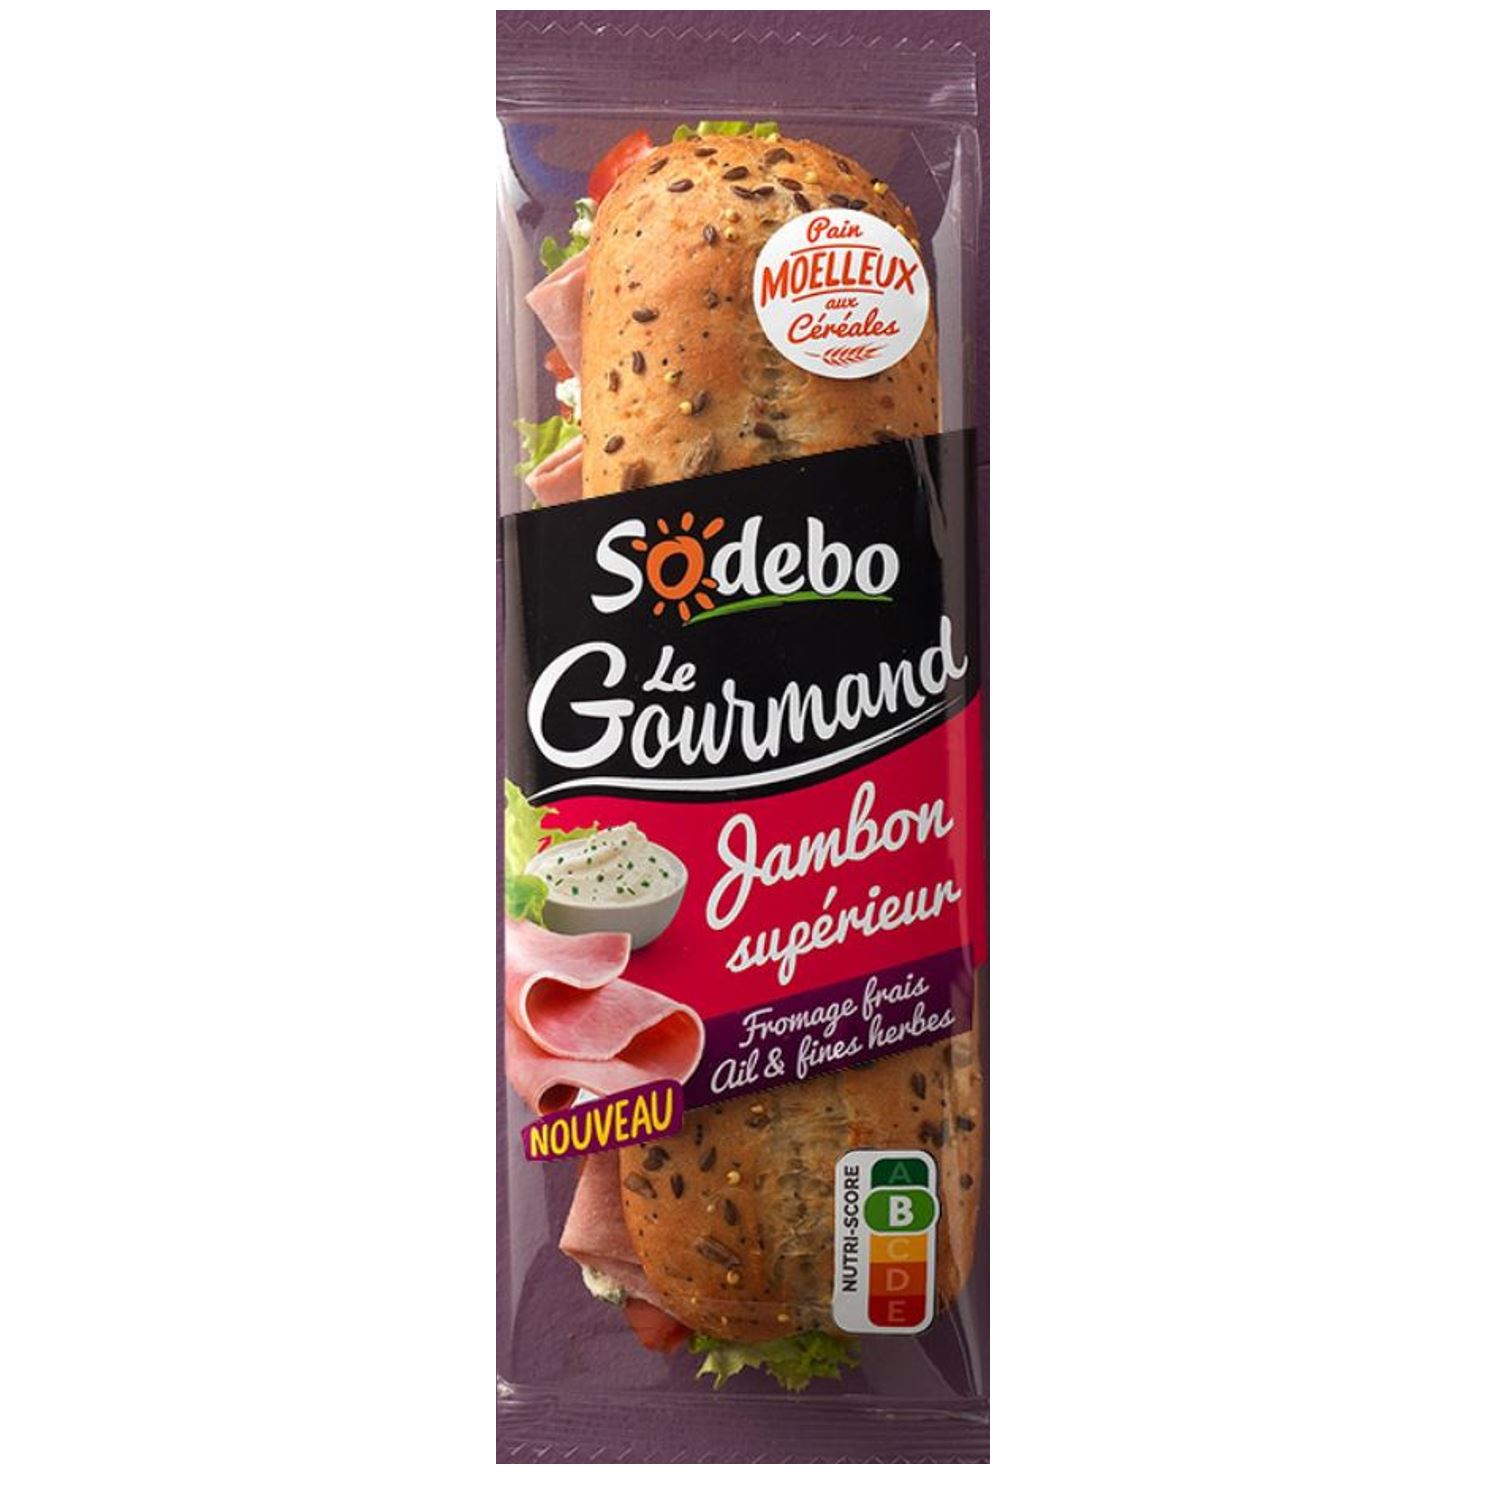 Sandwich Le Gourmand Jambon supérieur Fromage frais Ail & fines herbes